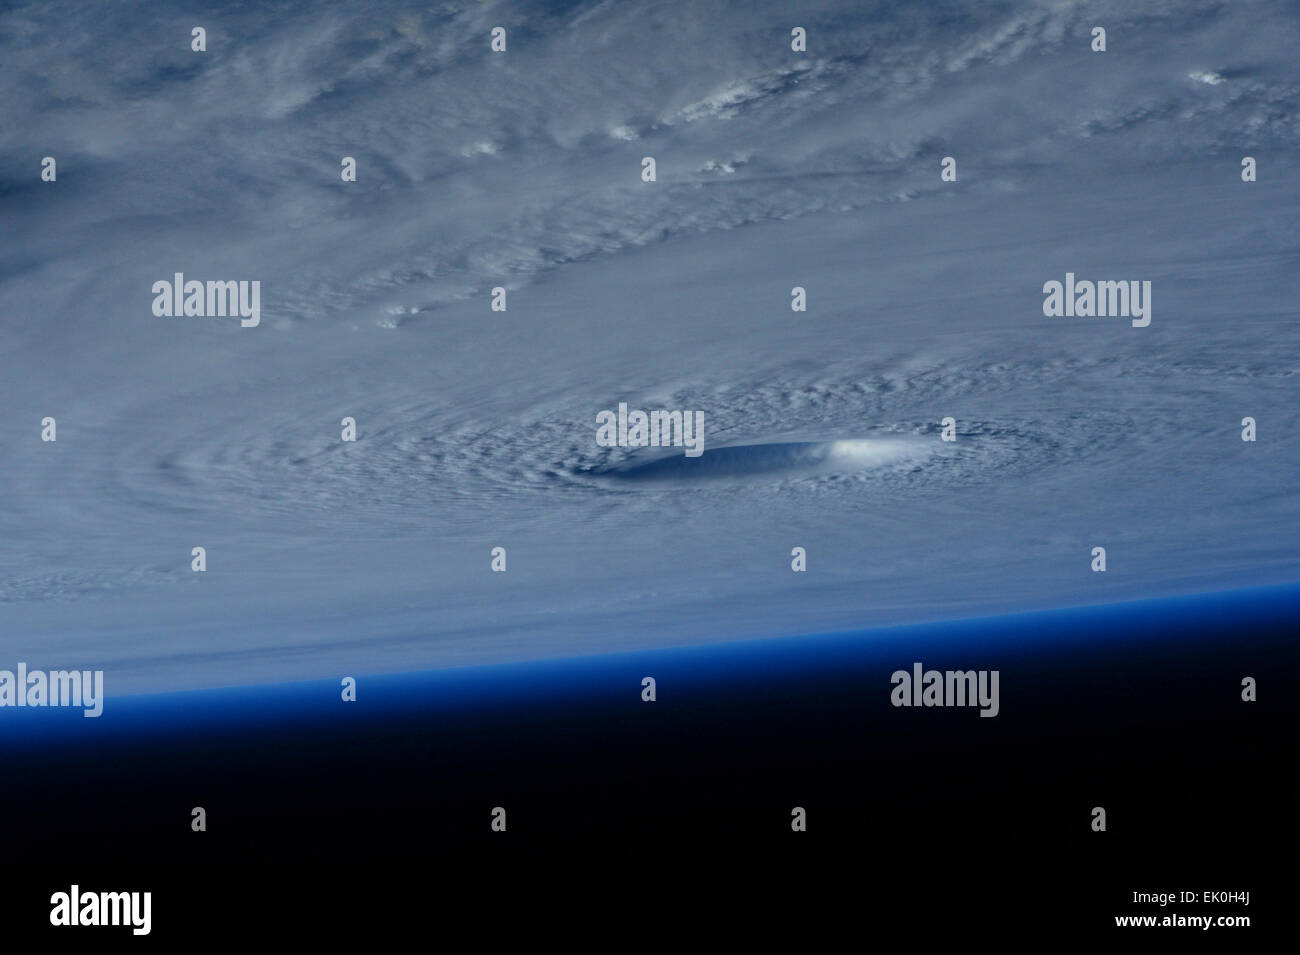 Vista dalla stazione spaziale internazionale del massiccio di categoria 5 Typhoon Maysak occhio come si avvicina le isole filippine il 31 marzo 2015. Il super tifone è previsto a terra il prossimo fine settimana di Pasqua. Foto Stock